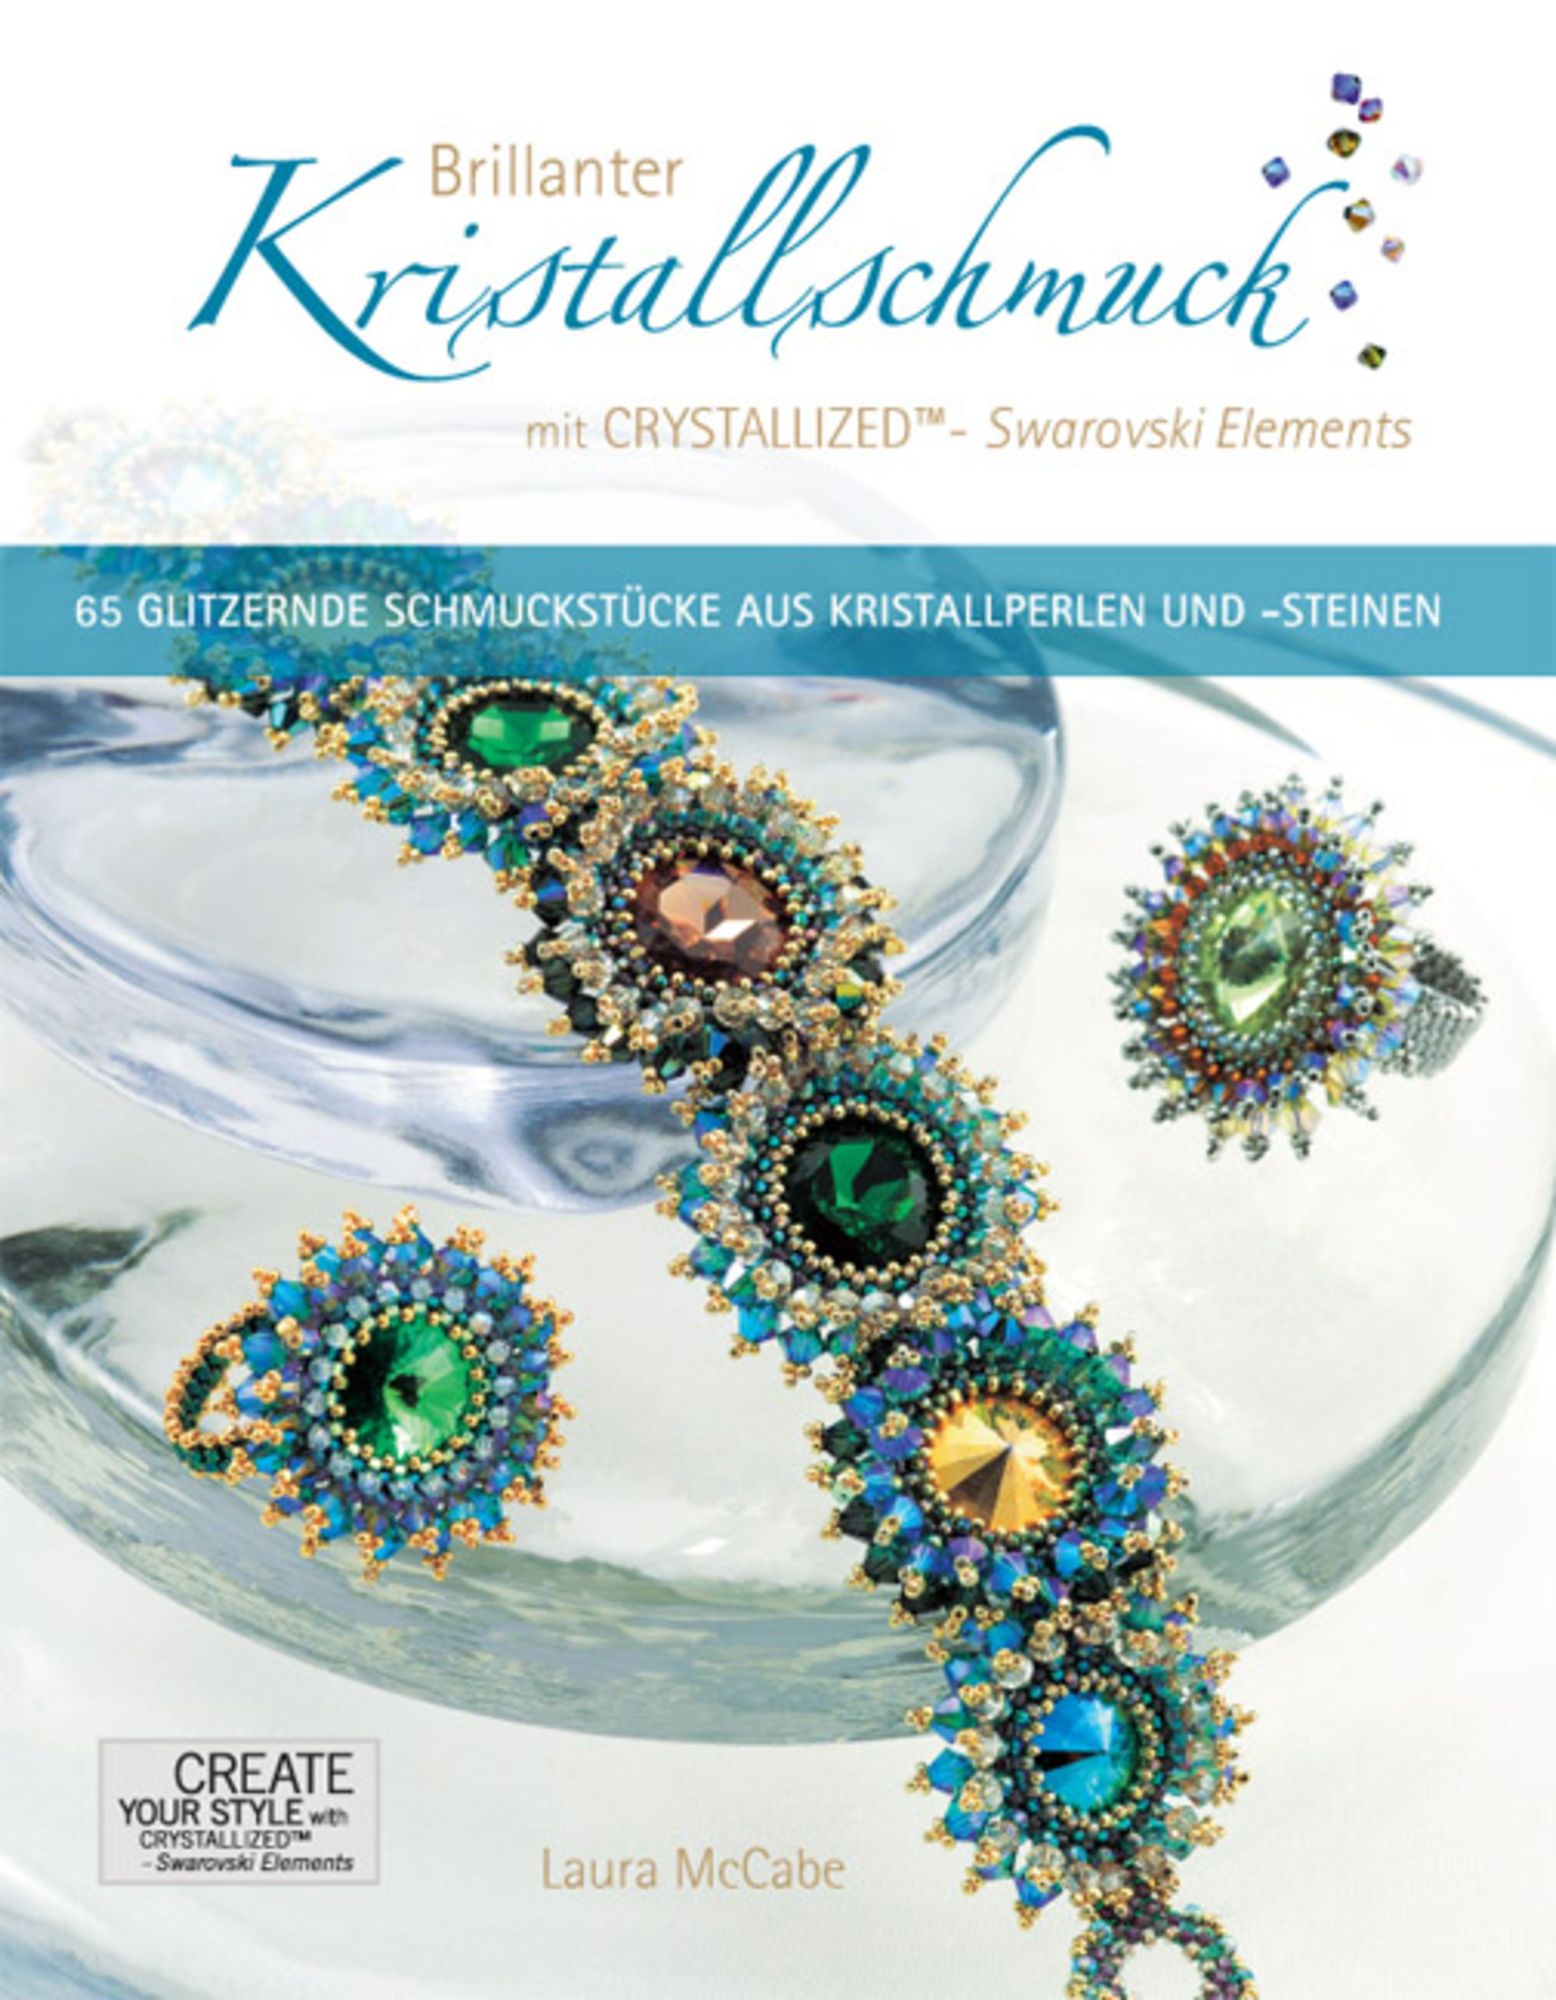 Brillanter Kristallschmuck mit CRYSTALLIZED™ - Swarovski Elements' von  'Laura McCabe' - Buch - '978-3-940577-00-9'